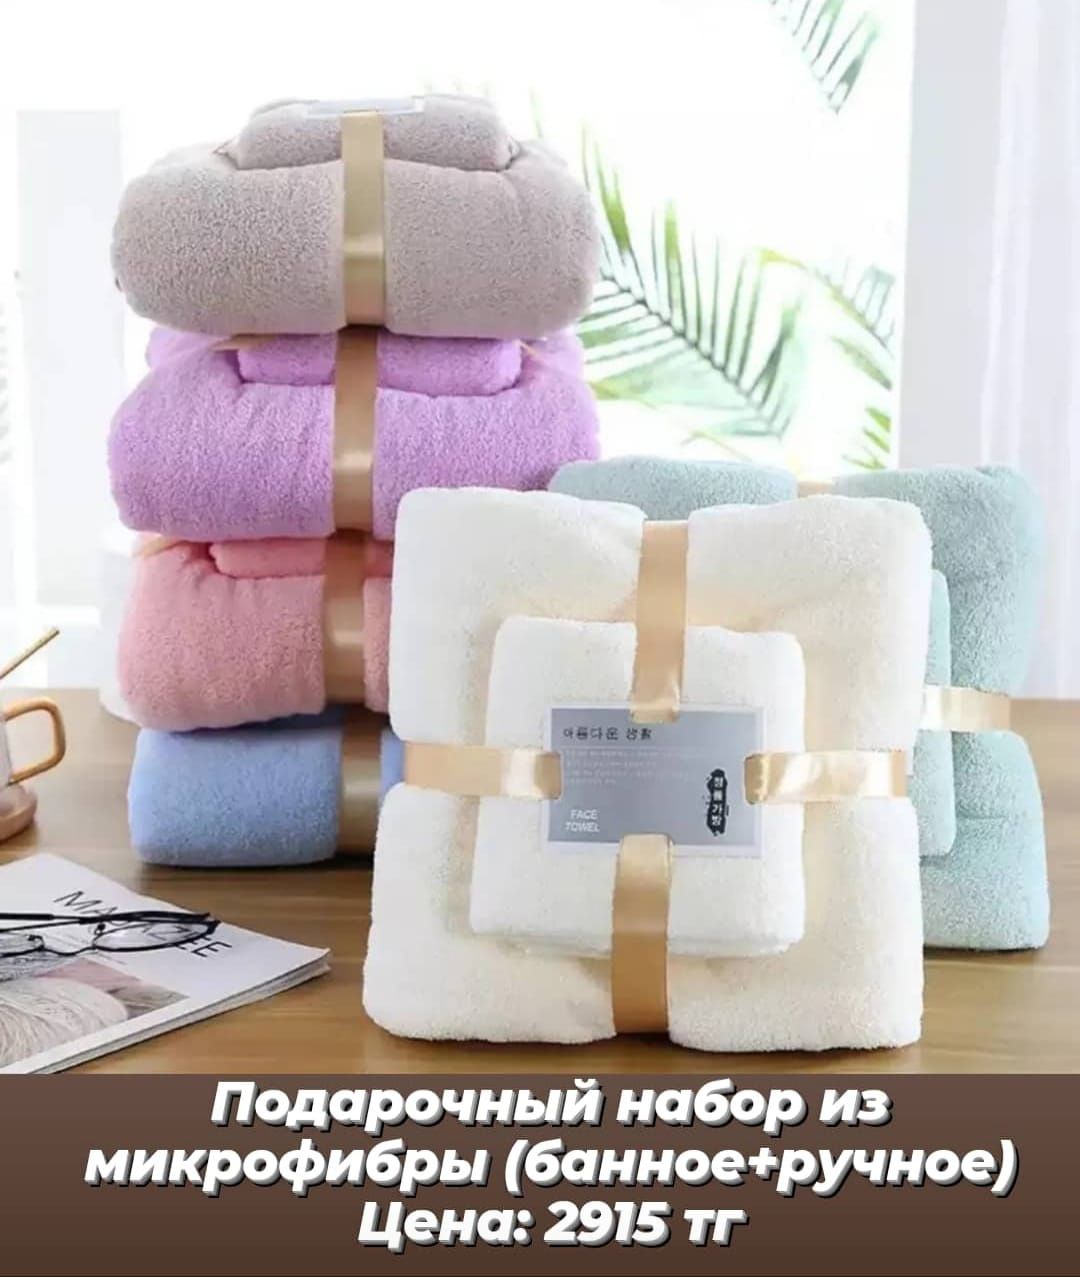 Подарочный набор полотенец (банное+ручное)